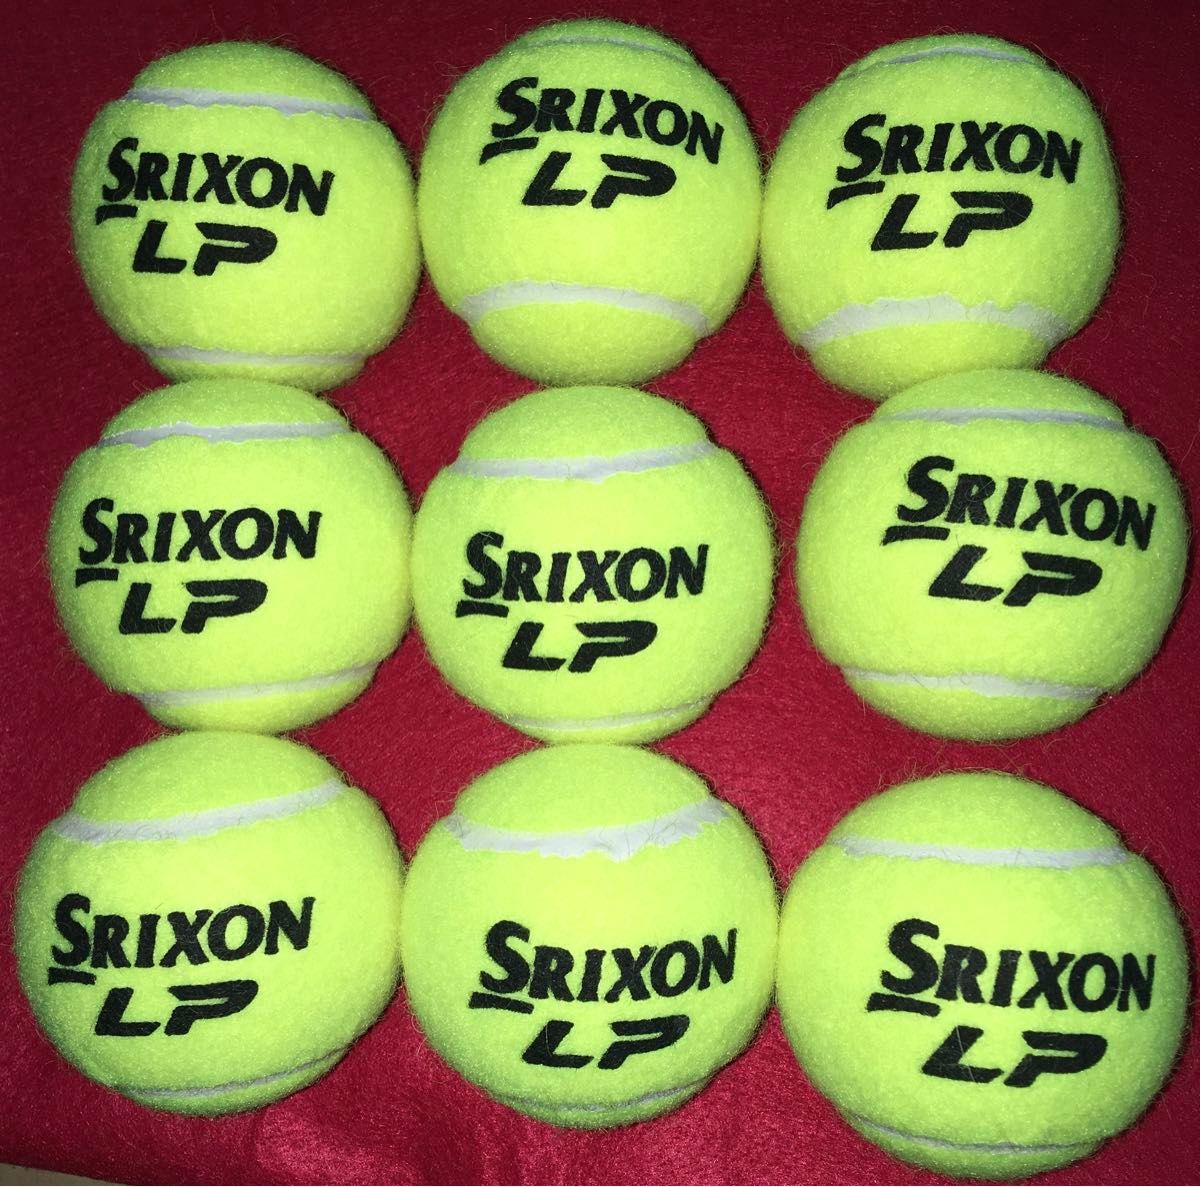 新品 ノンプレッシャー テニスボール SRIXON LP 9球